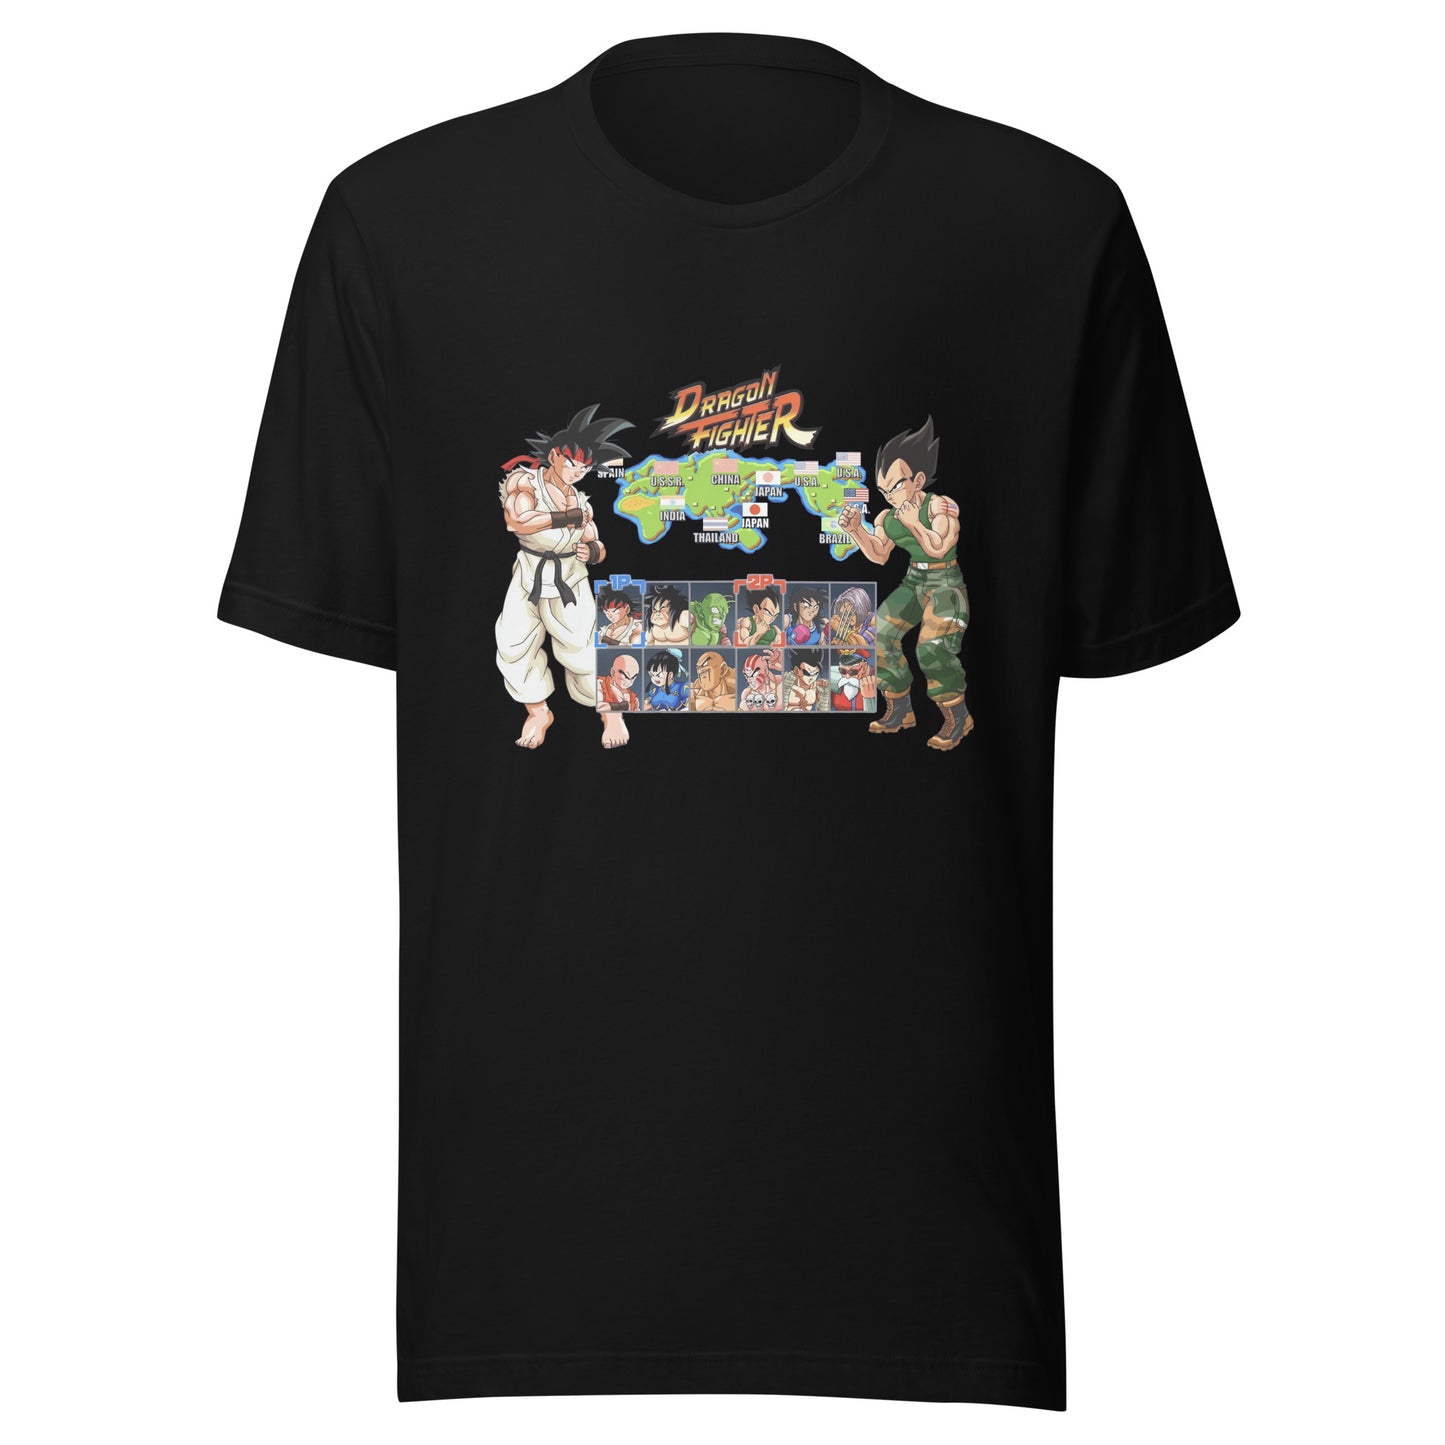 ¡Compra el mejor merchandising en Superstar! Encuentra diseños únicos y de alta calidad en camisetas únicas, Camiseta Dragon Fighter